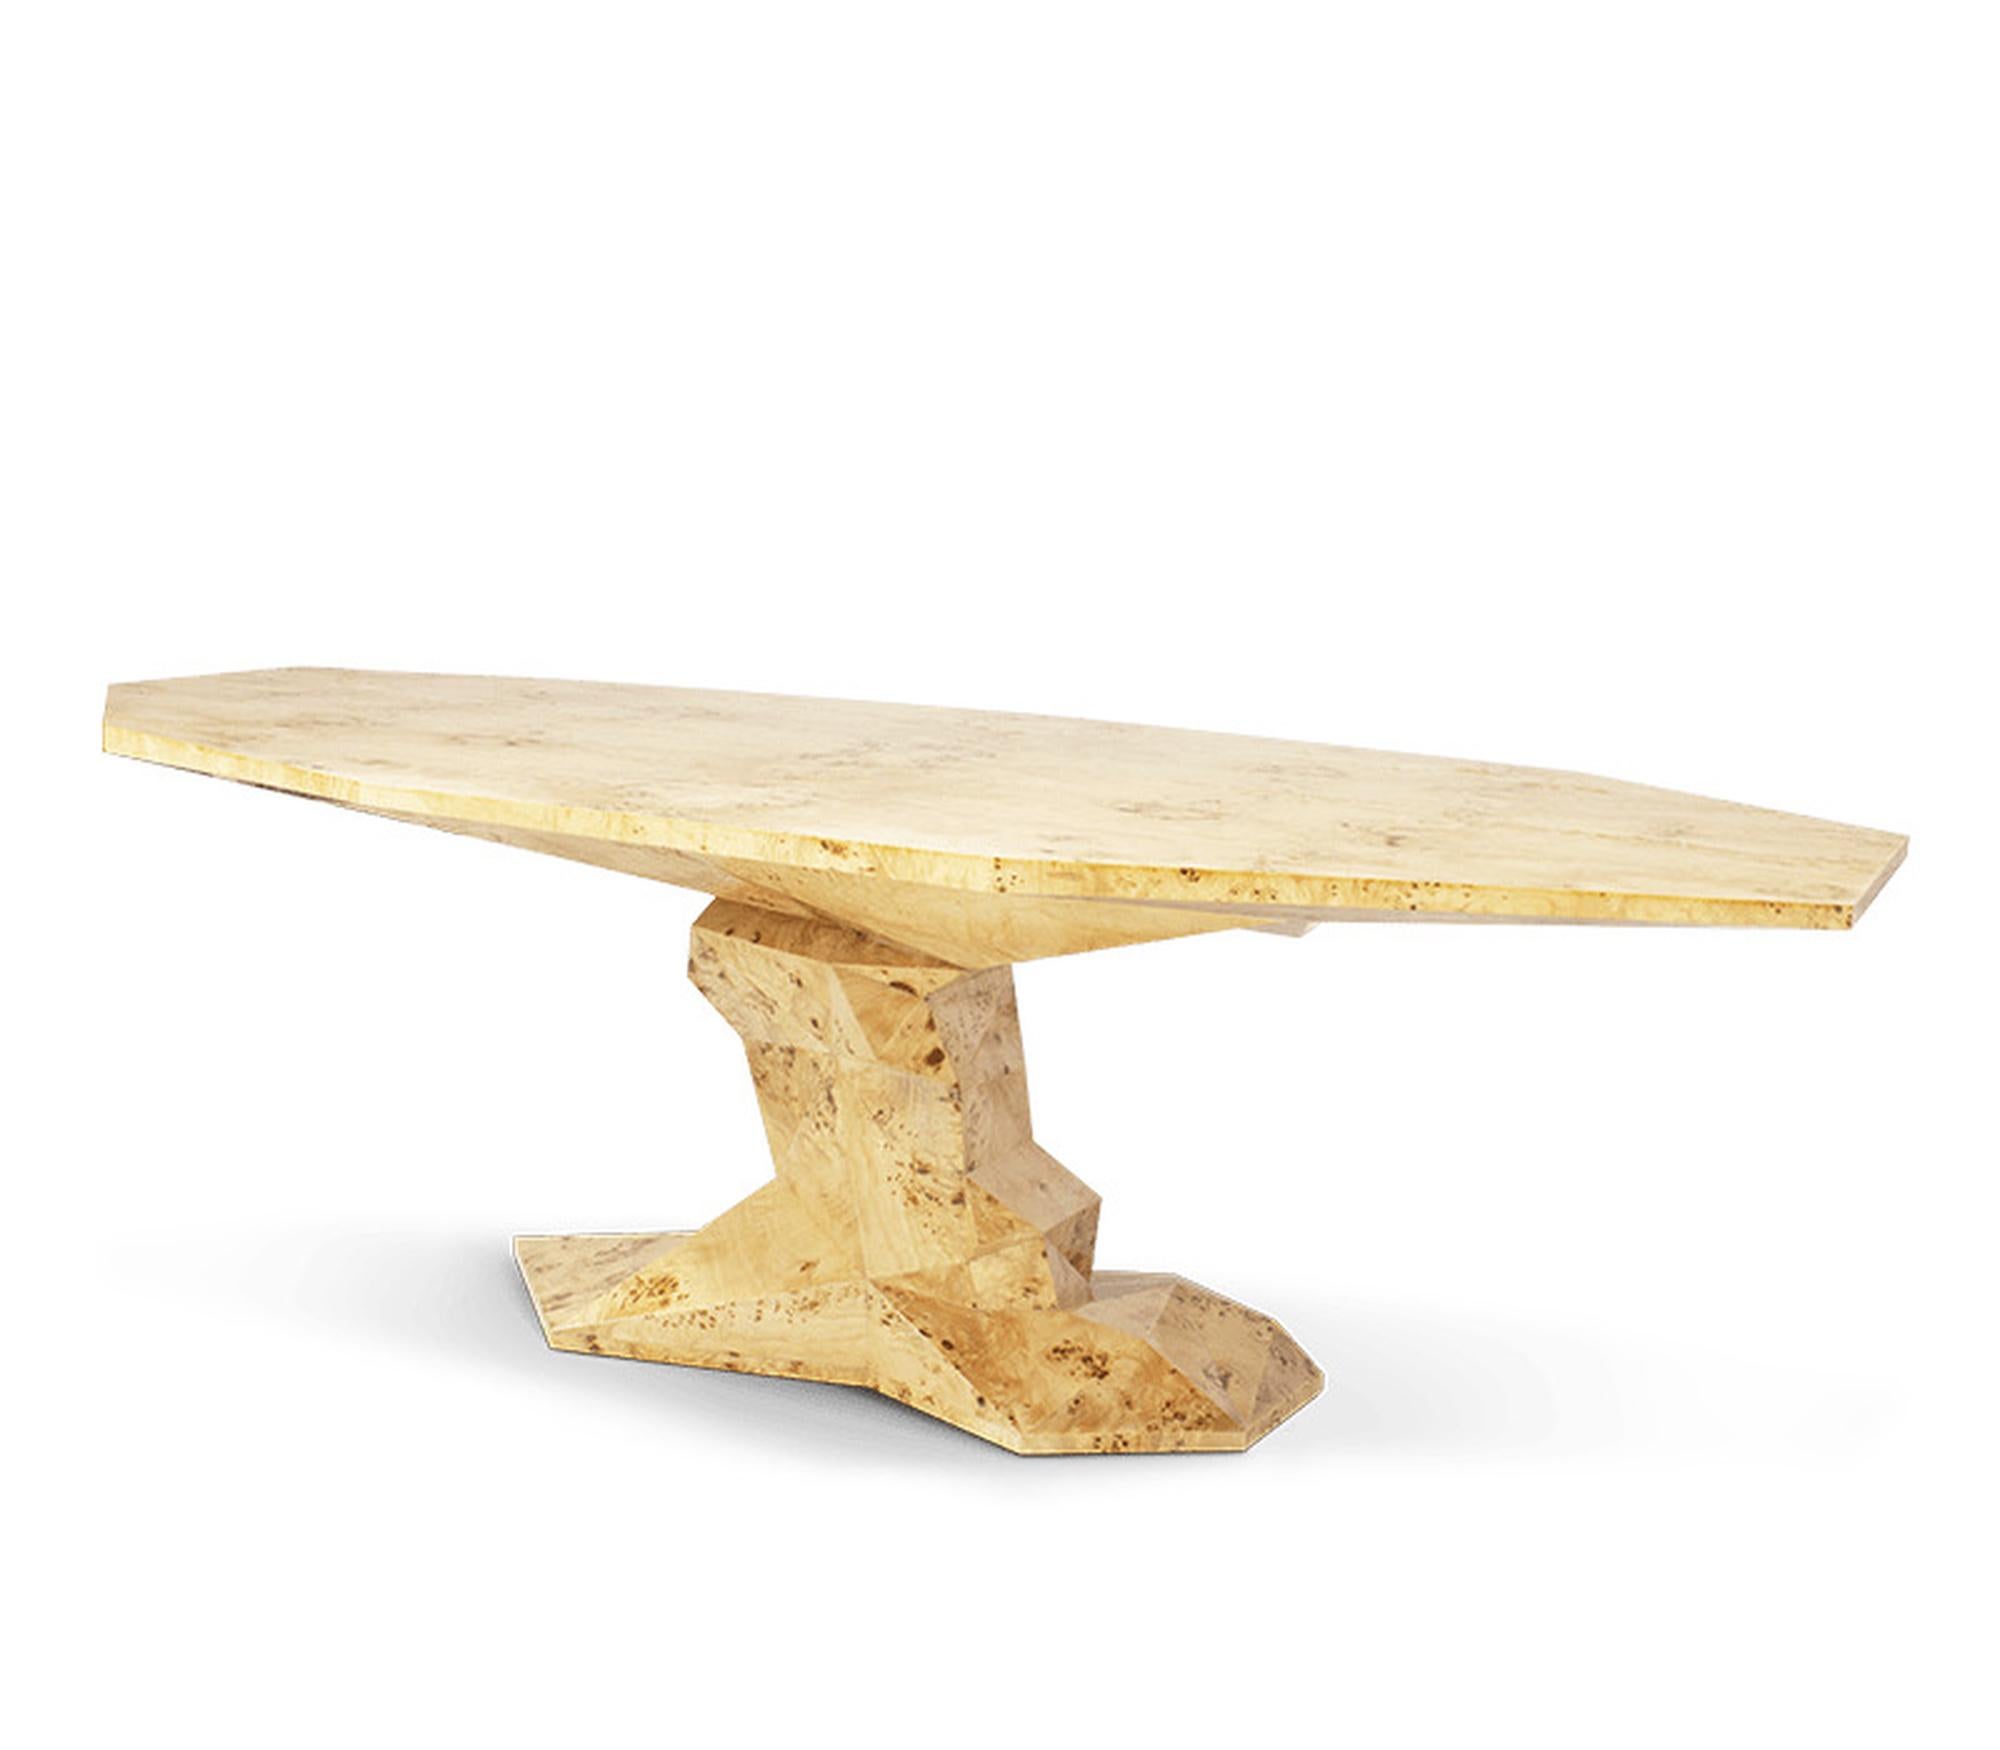 Table moderne en bois « Acacia »

Table fabriquée manuellement en bois avec une finition de surface irrégulière et une forme unique à facettes. En finition bois de peuplier/ laque vert forêt tropicale haute brillance.
H : 77 cm, l : 200 cm, d : 125